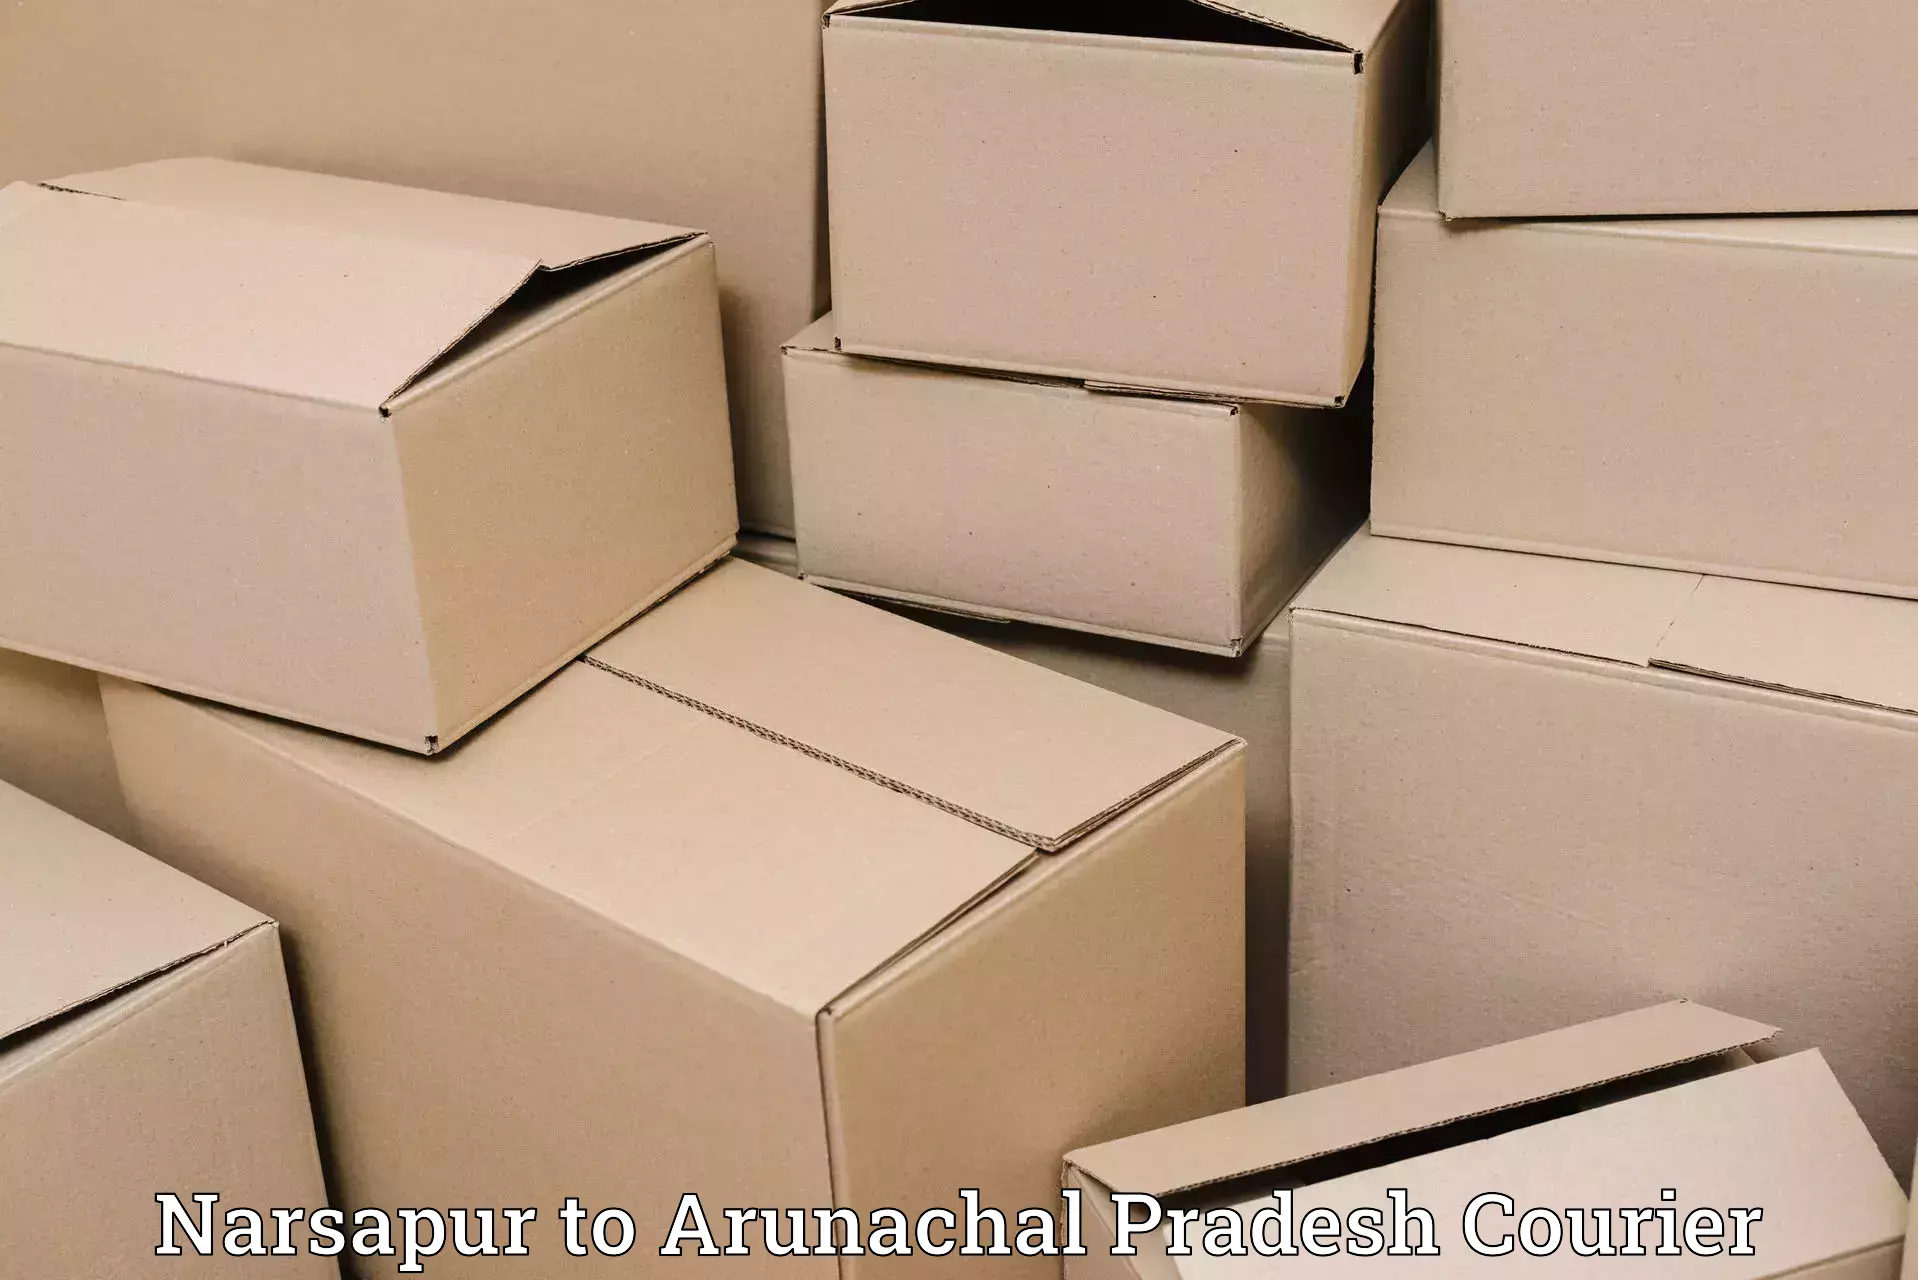 Sustainable courier practices Narsapur to Arunachal Pradesh